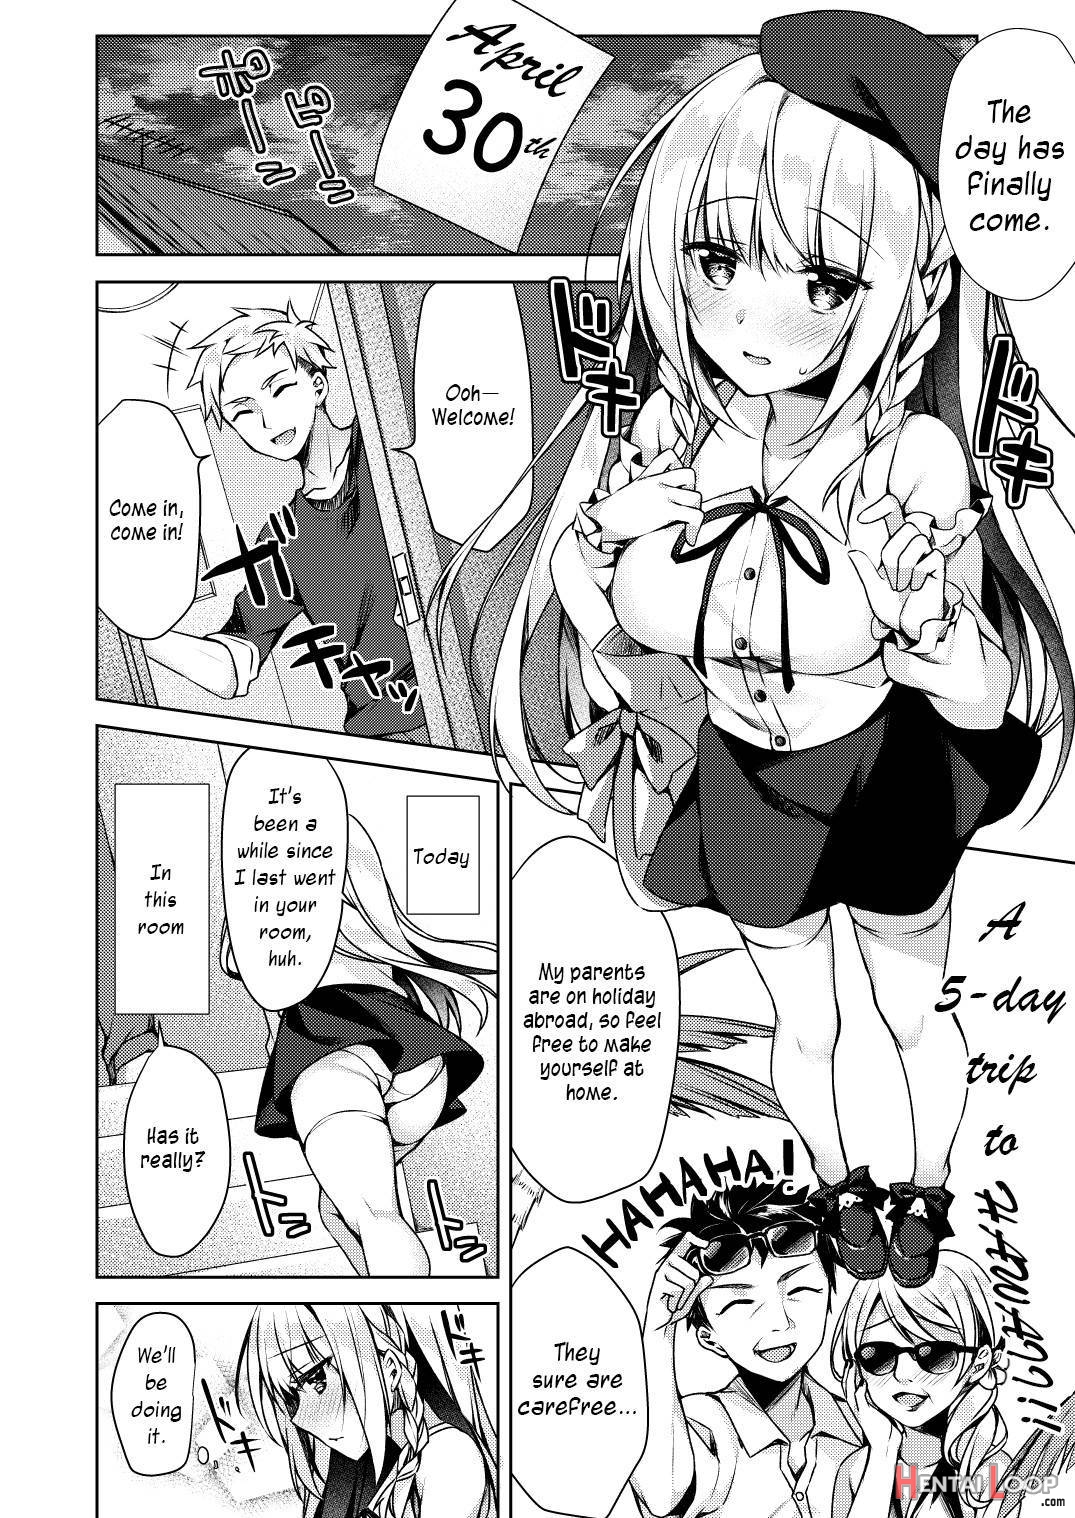 Kaigen ♥ Sex Reiwa-chan page 8